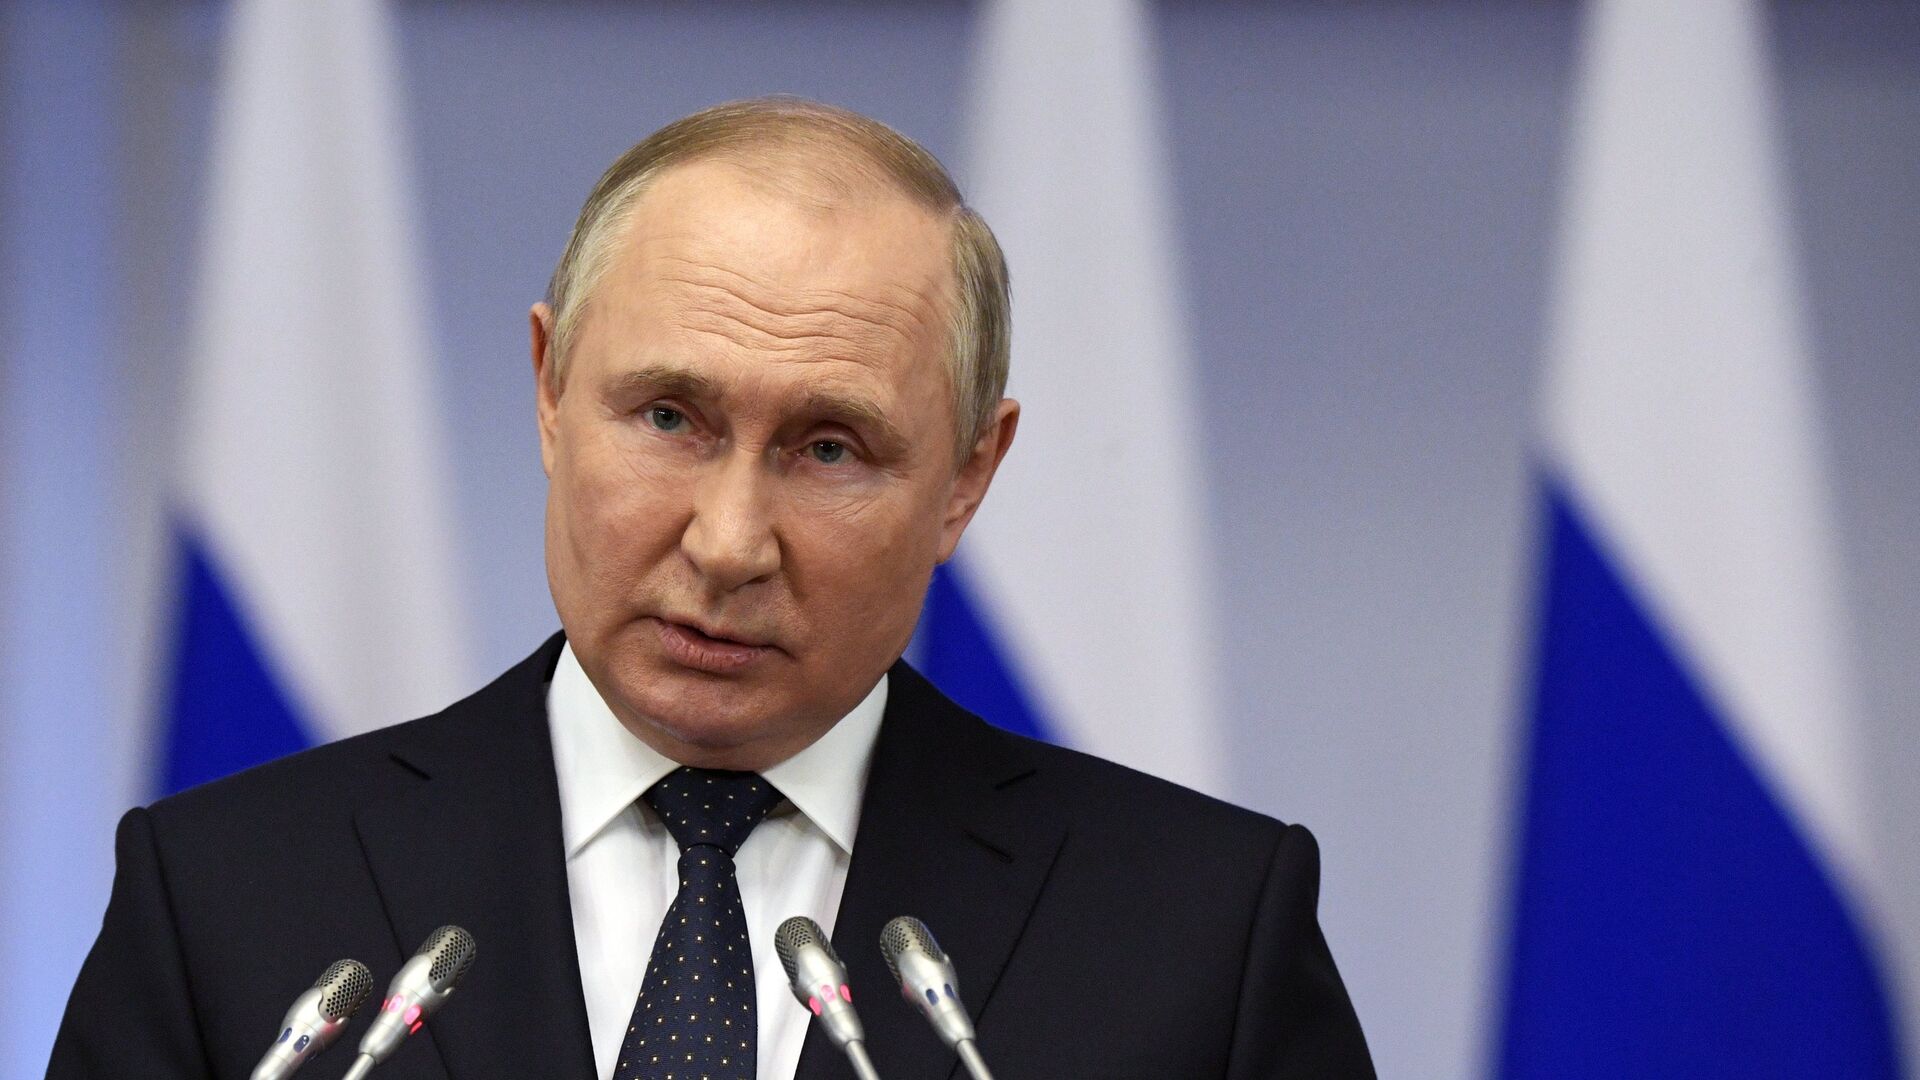 Путин: «Игры будущего» в России продемонстрируют приоритеты многополярного мира